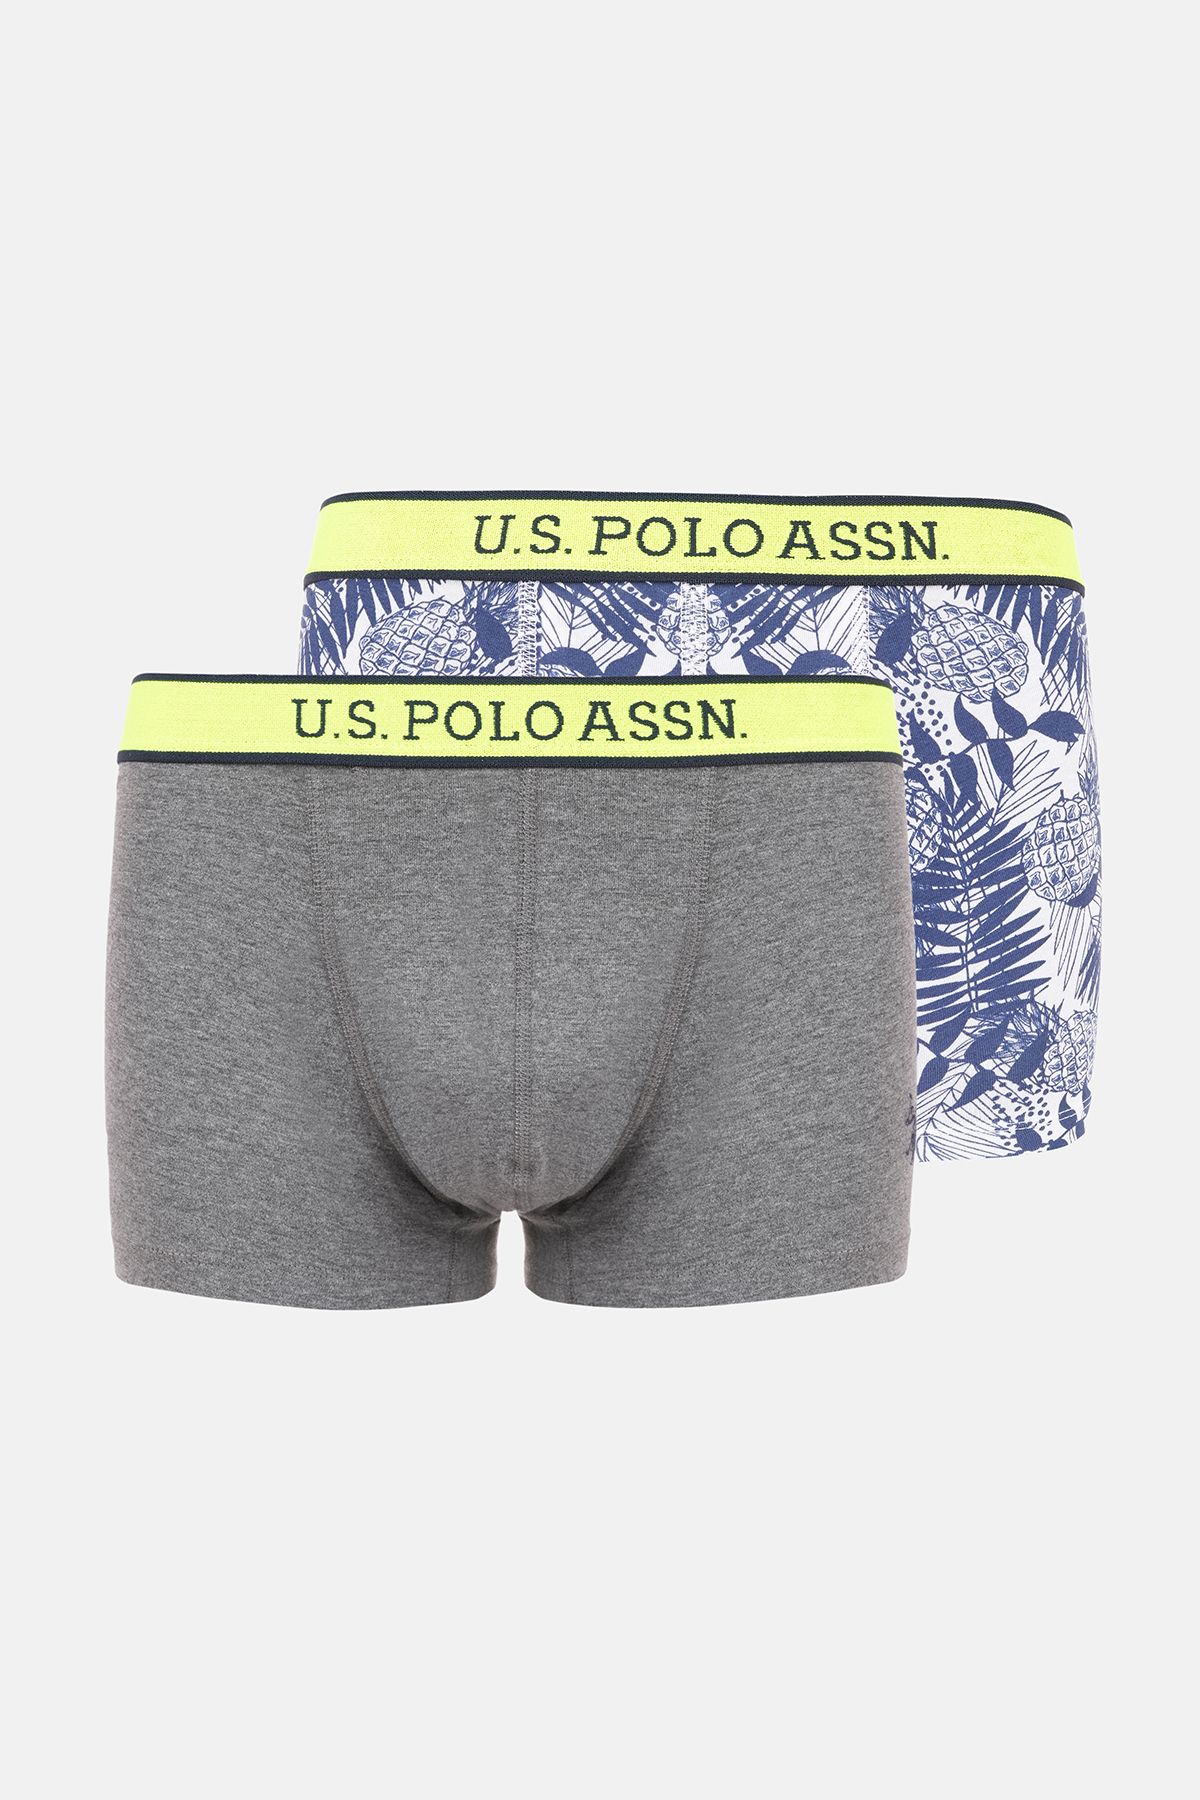 U.S. Polo Assn. 80479 Erkek Renkli Baskılı-Gri 2'li Boxer